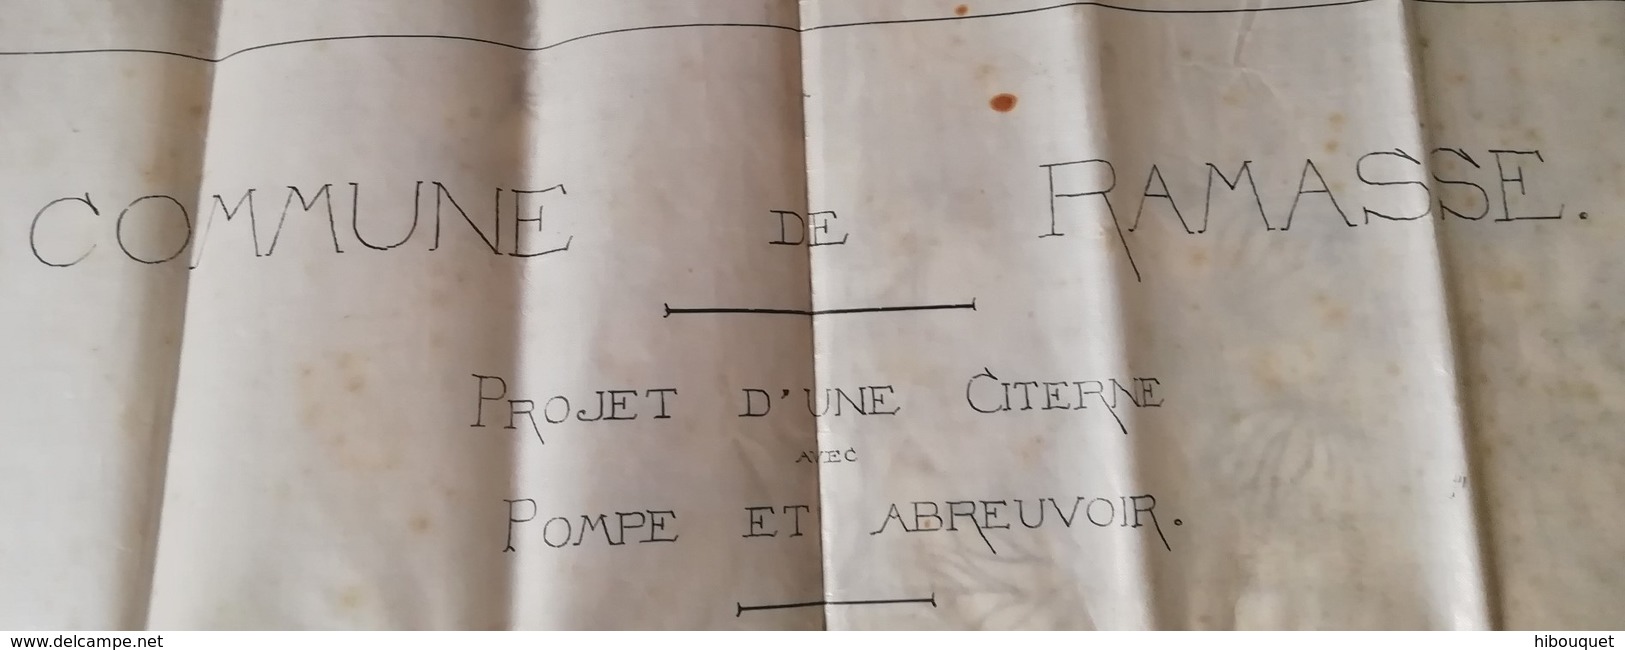 Plan  D'une Citerne, Pompe Et Abreuvoir Commune De Ramasse (01), Signé Par L'Architecte 16 Février 1878 - Other Plans